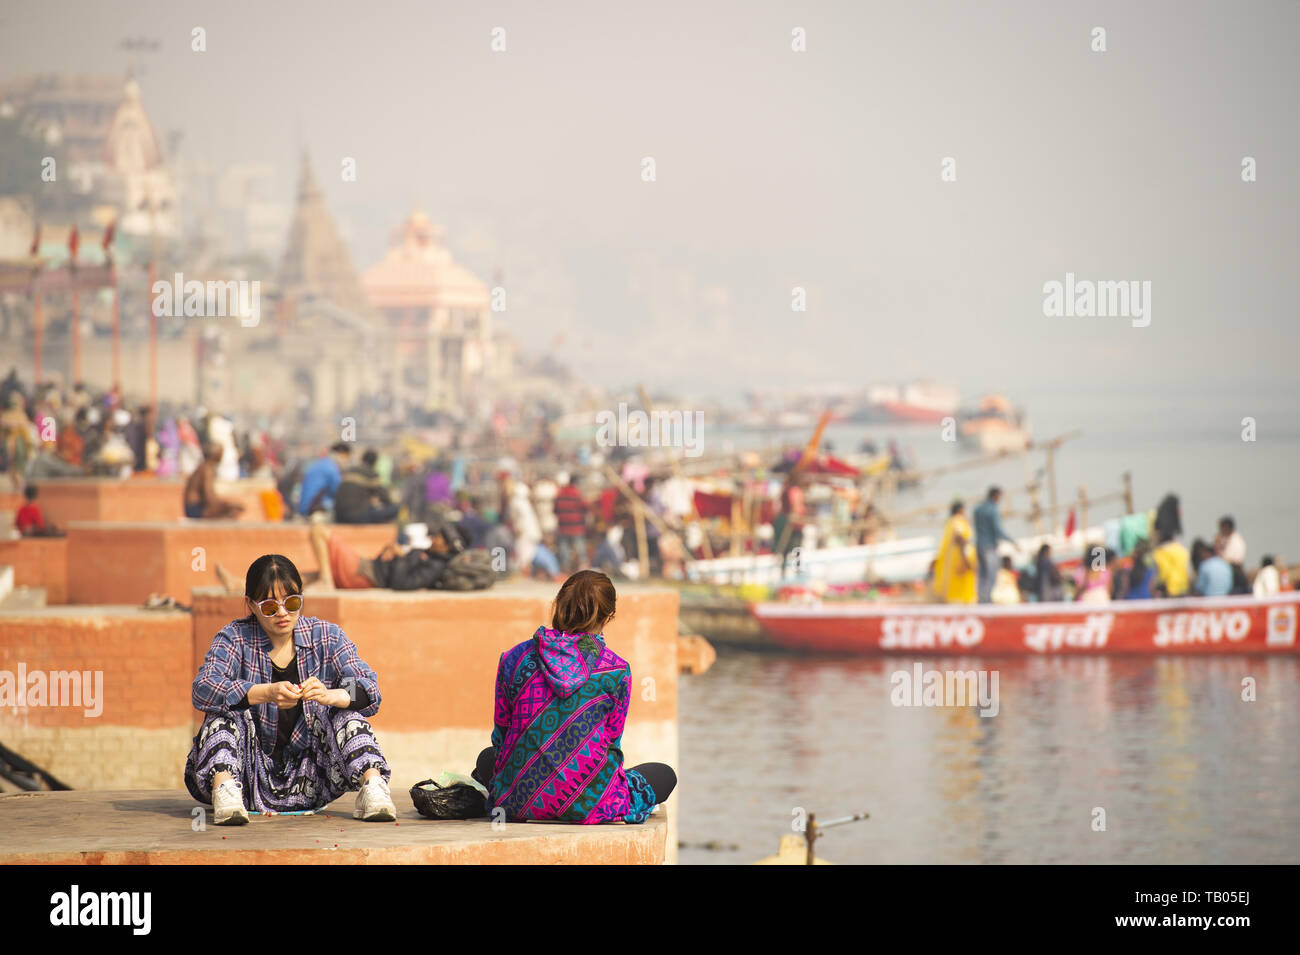 Zwei chinesische Touristen sitzen auf einer Ghat in Varanasi. Manikarnika Ghat (brennende Ghat) im Hintergrund. Varanasi, Indien. Stockfoto